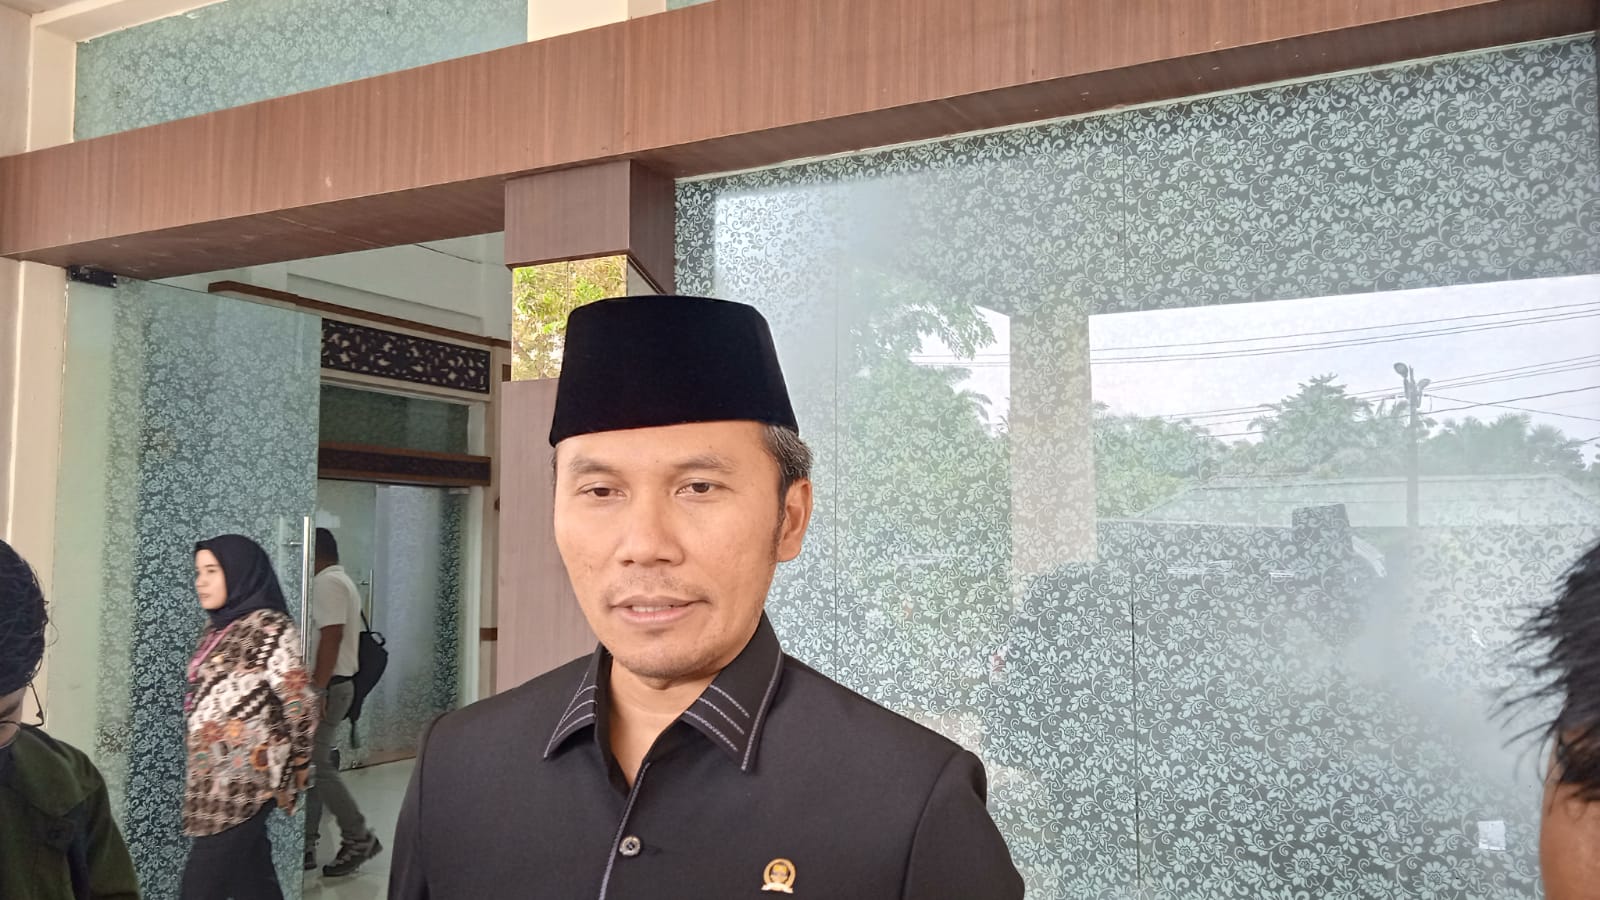 Pantarlih Lakukan Coklit di Rumah Ketua DPRD Provinsi Jambi Edi Purwanto